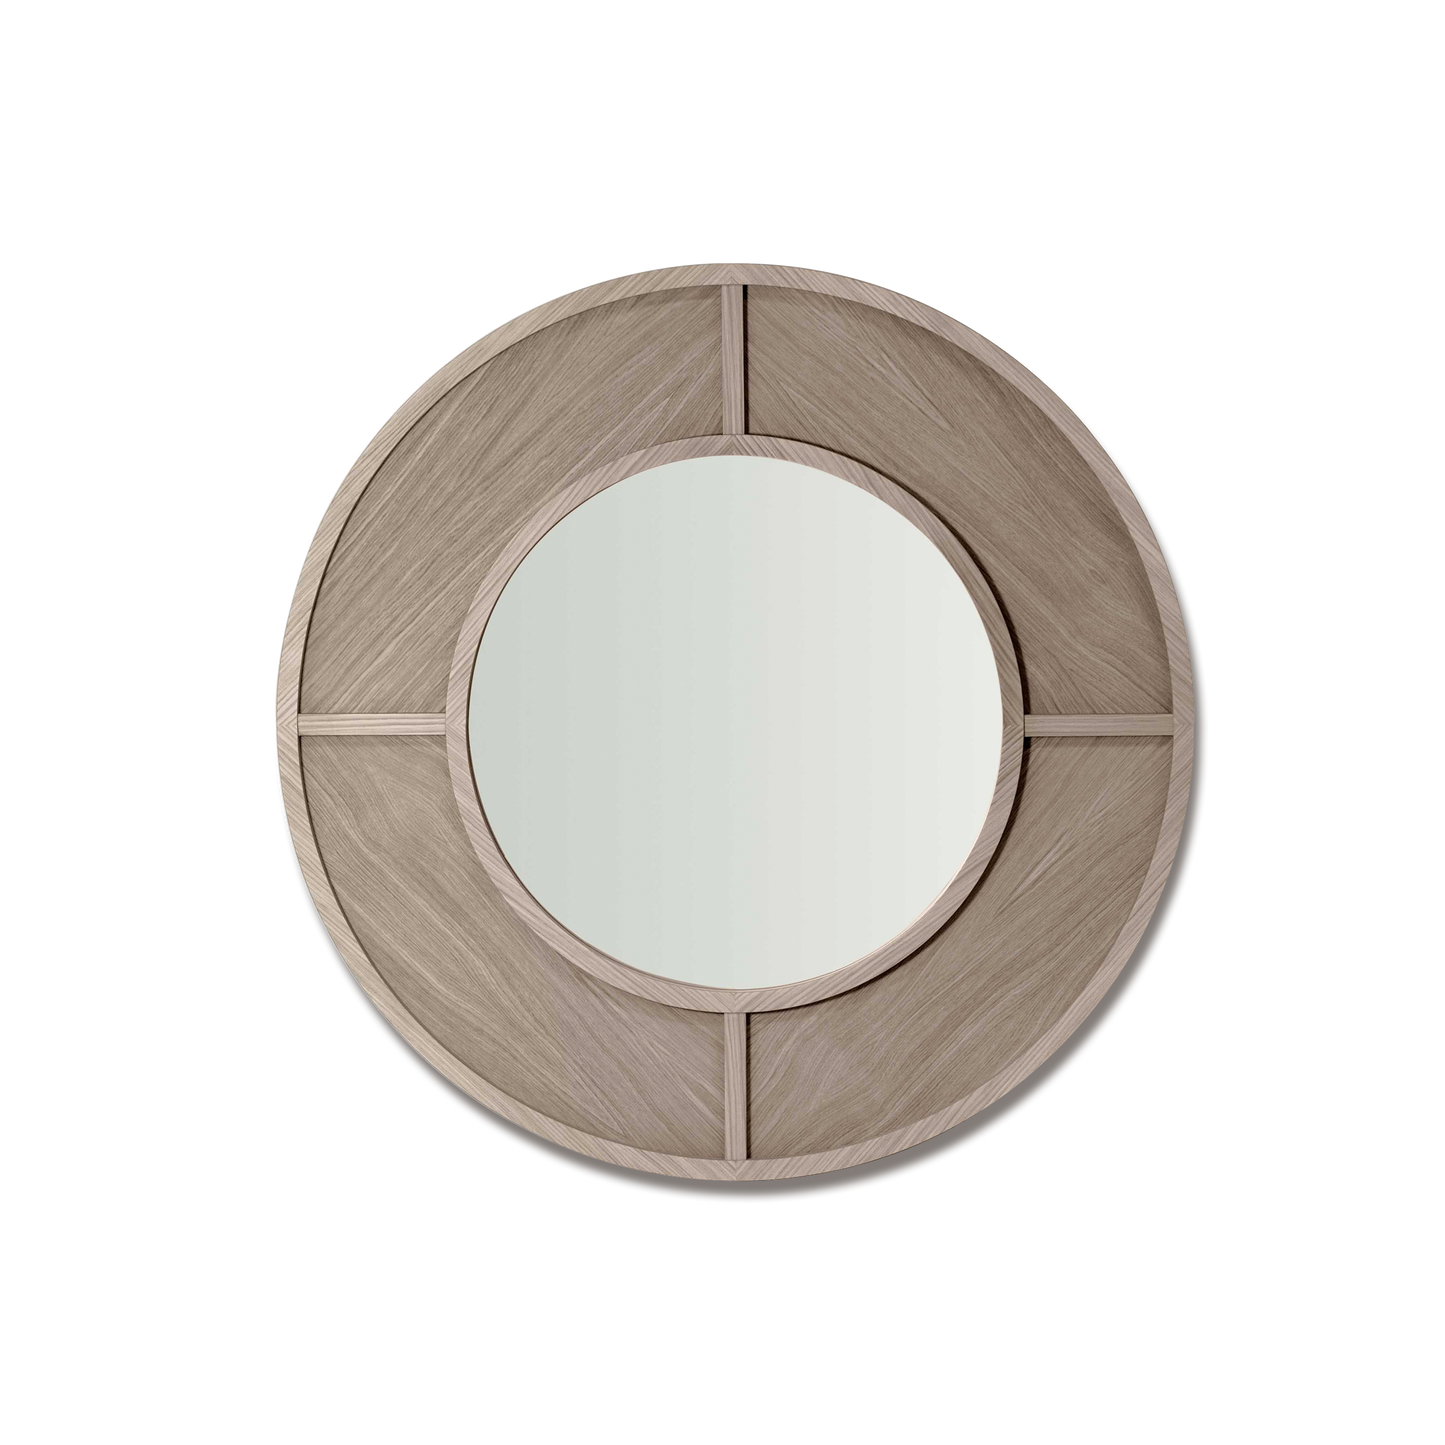  Constanza Mirror in natural grey wood